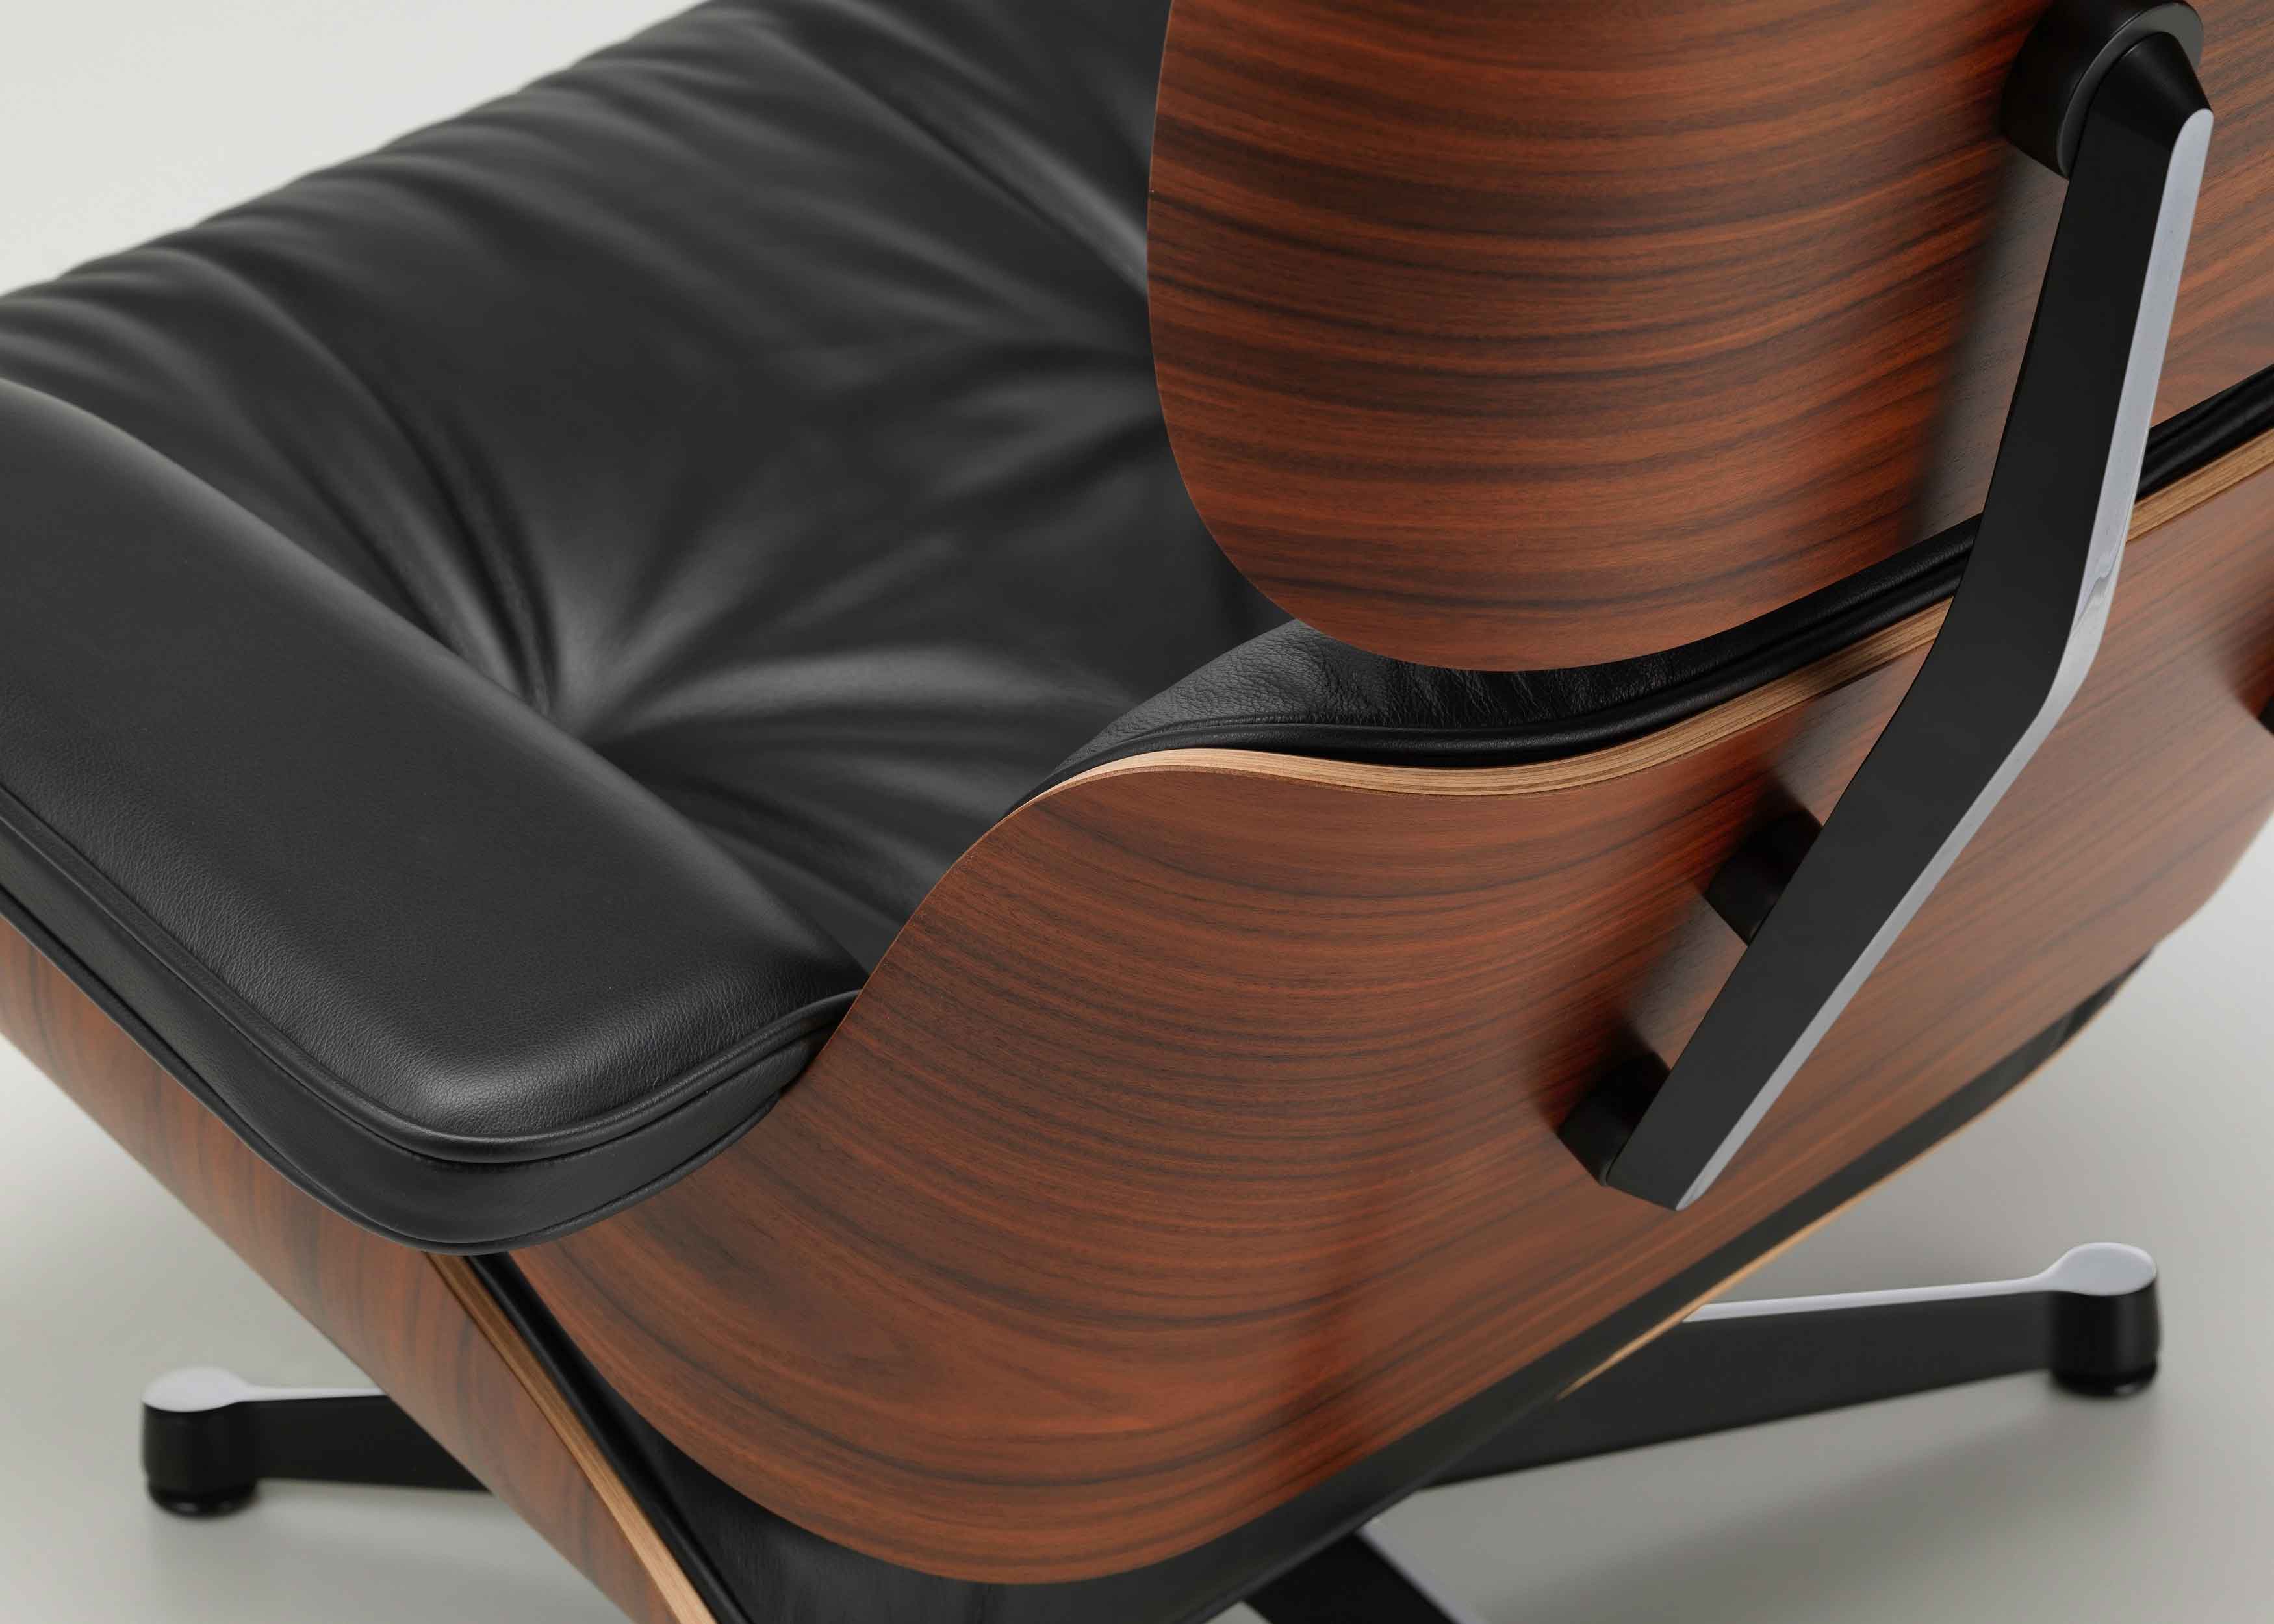 Designerstuhl Eames Lounge Chair mit Ottomane von Vitra mit schwarzem Leder und Holz Palisander und Fusskreuz schwarz bei LHL im Onlineshop kaufen – Rueckansicht  Detail Kanten Holz und Naehte 